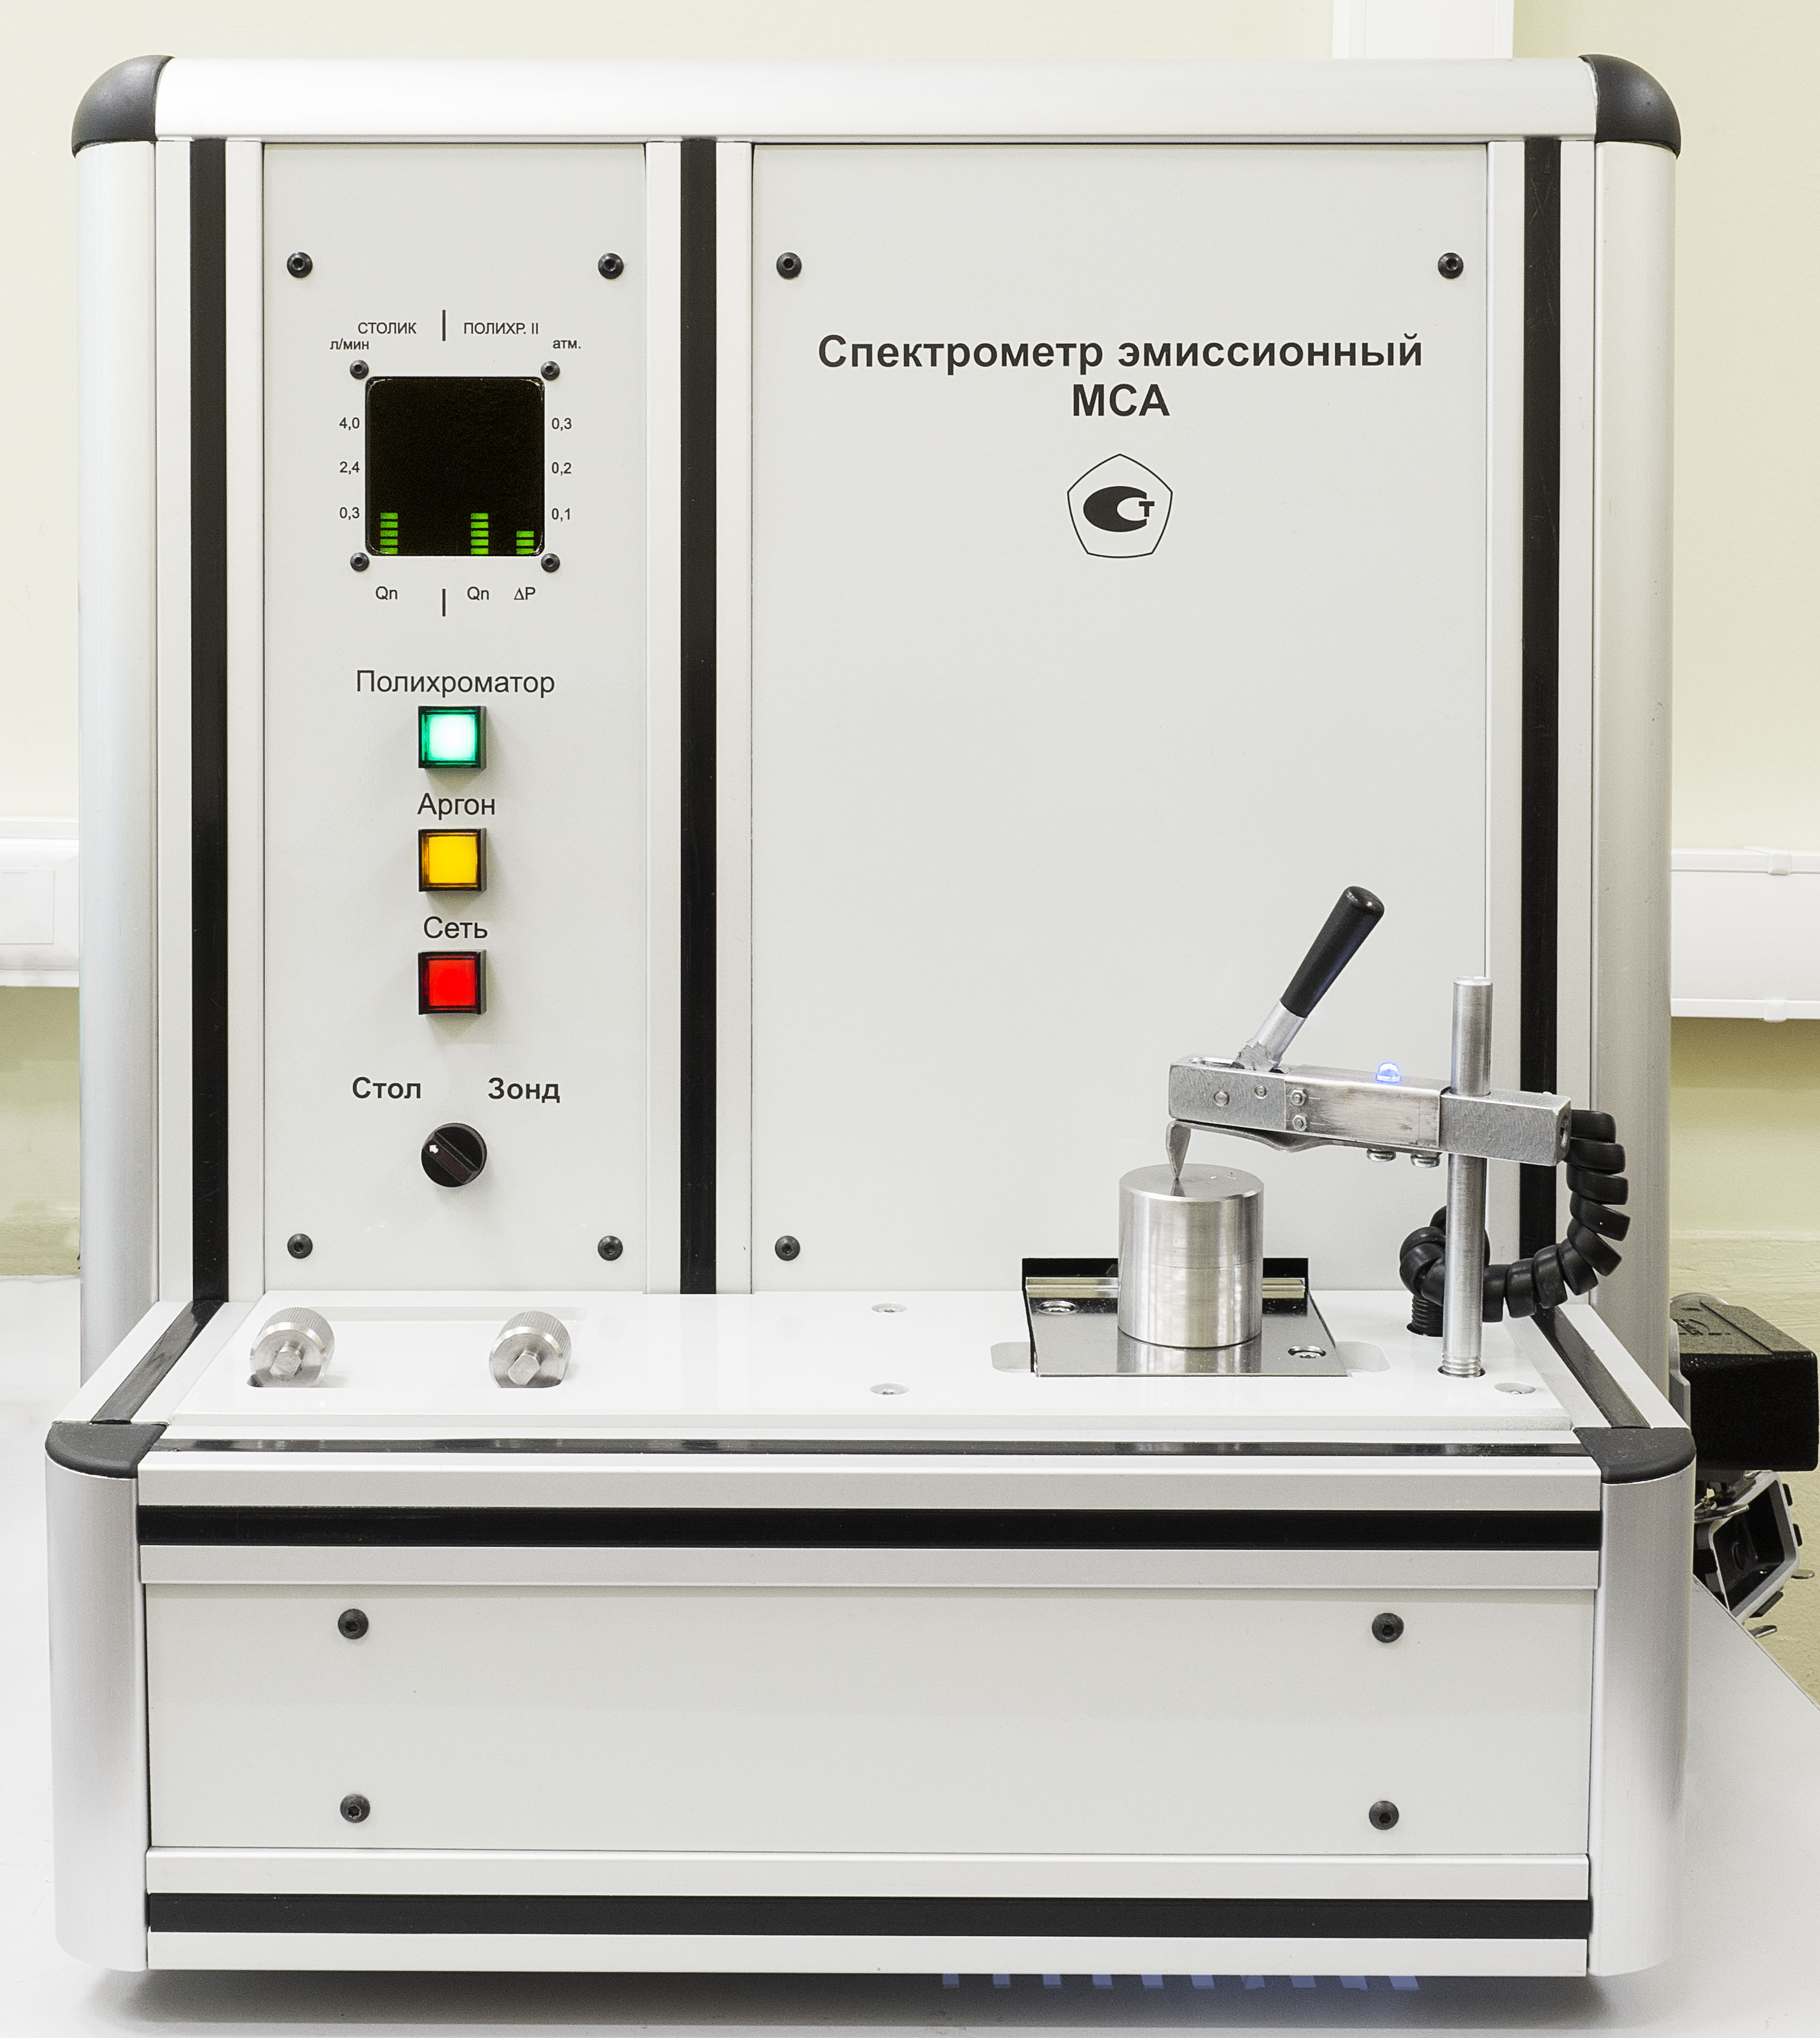 Emission spectrometer MCA II V5